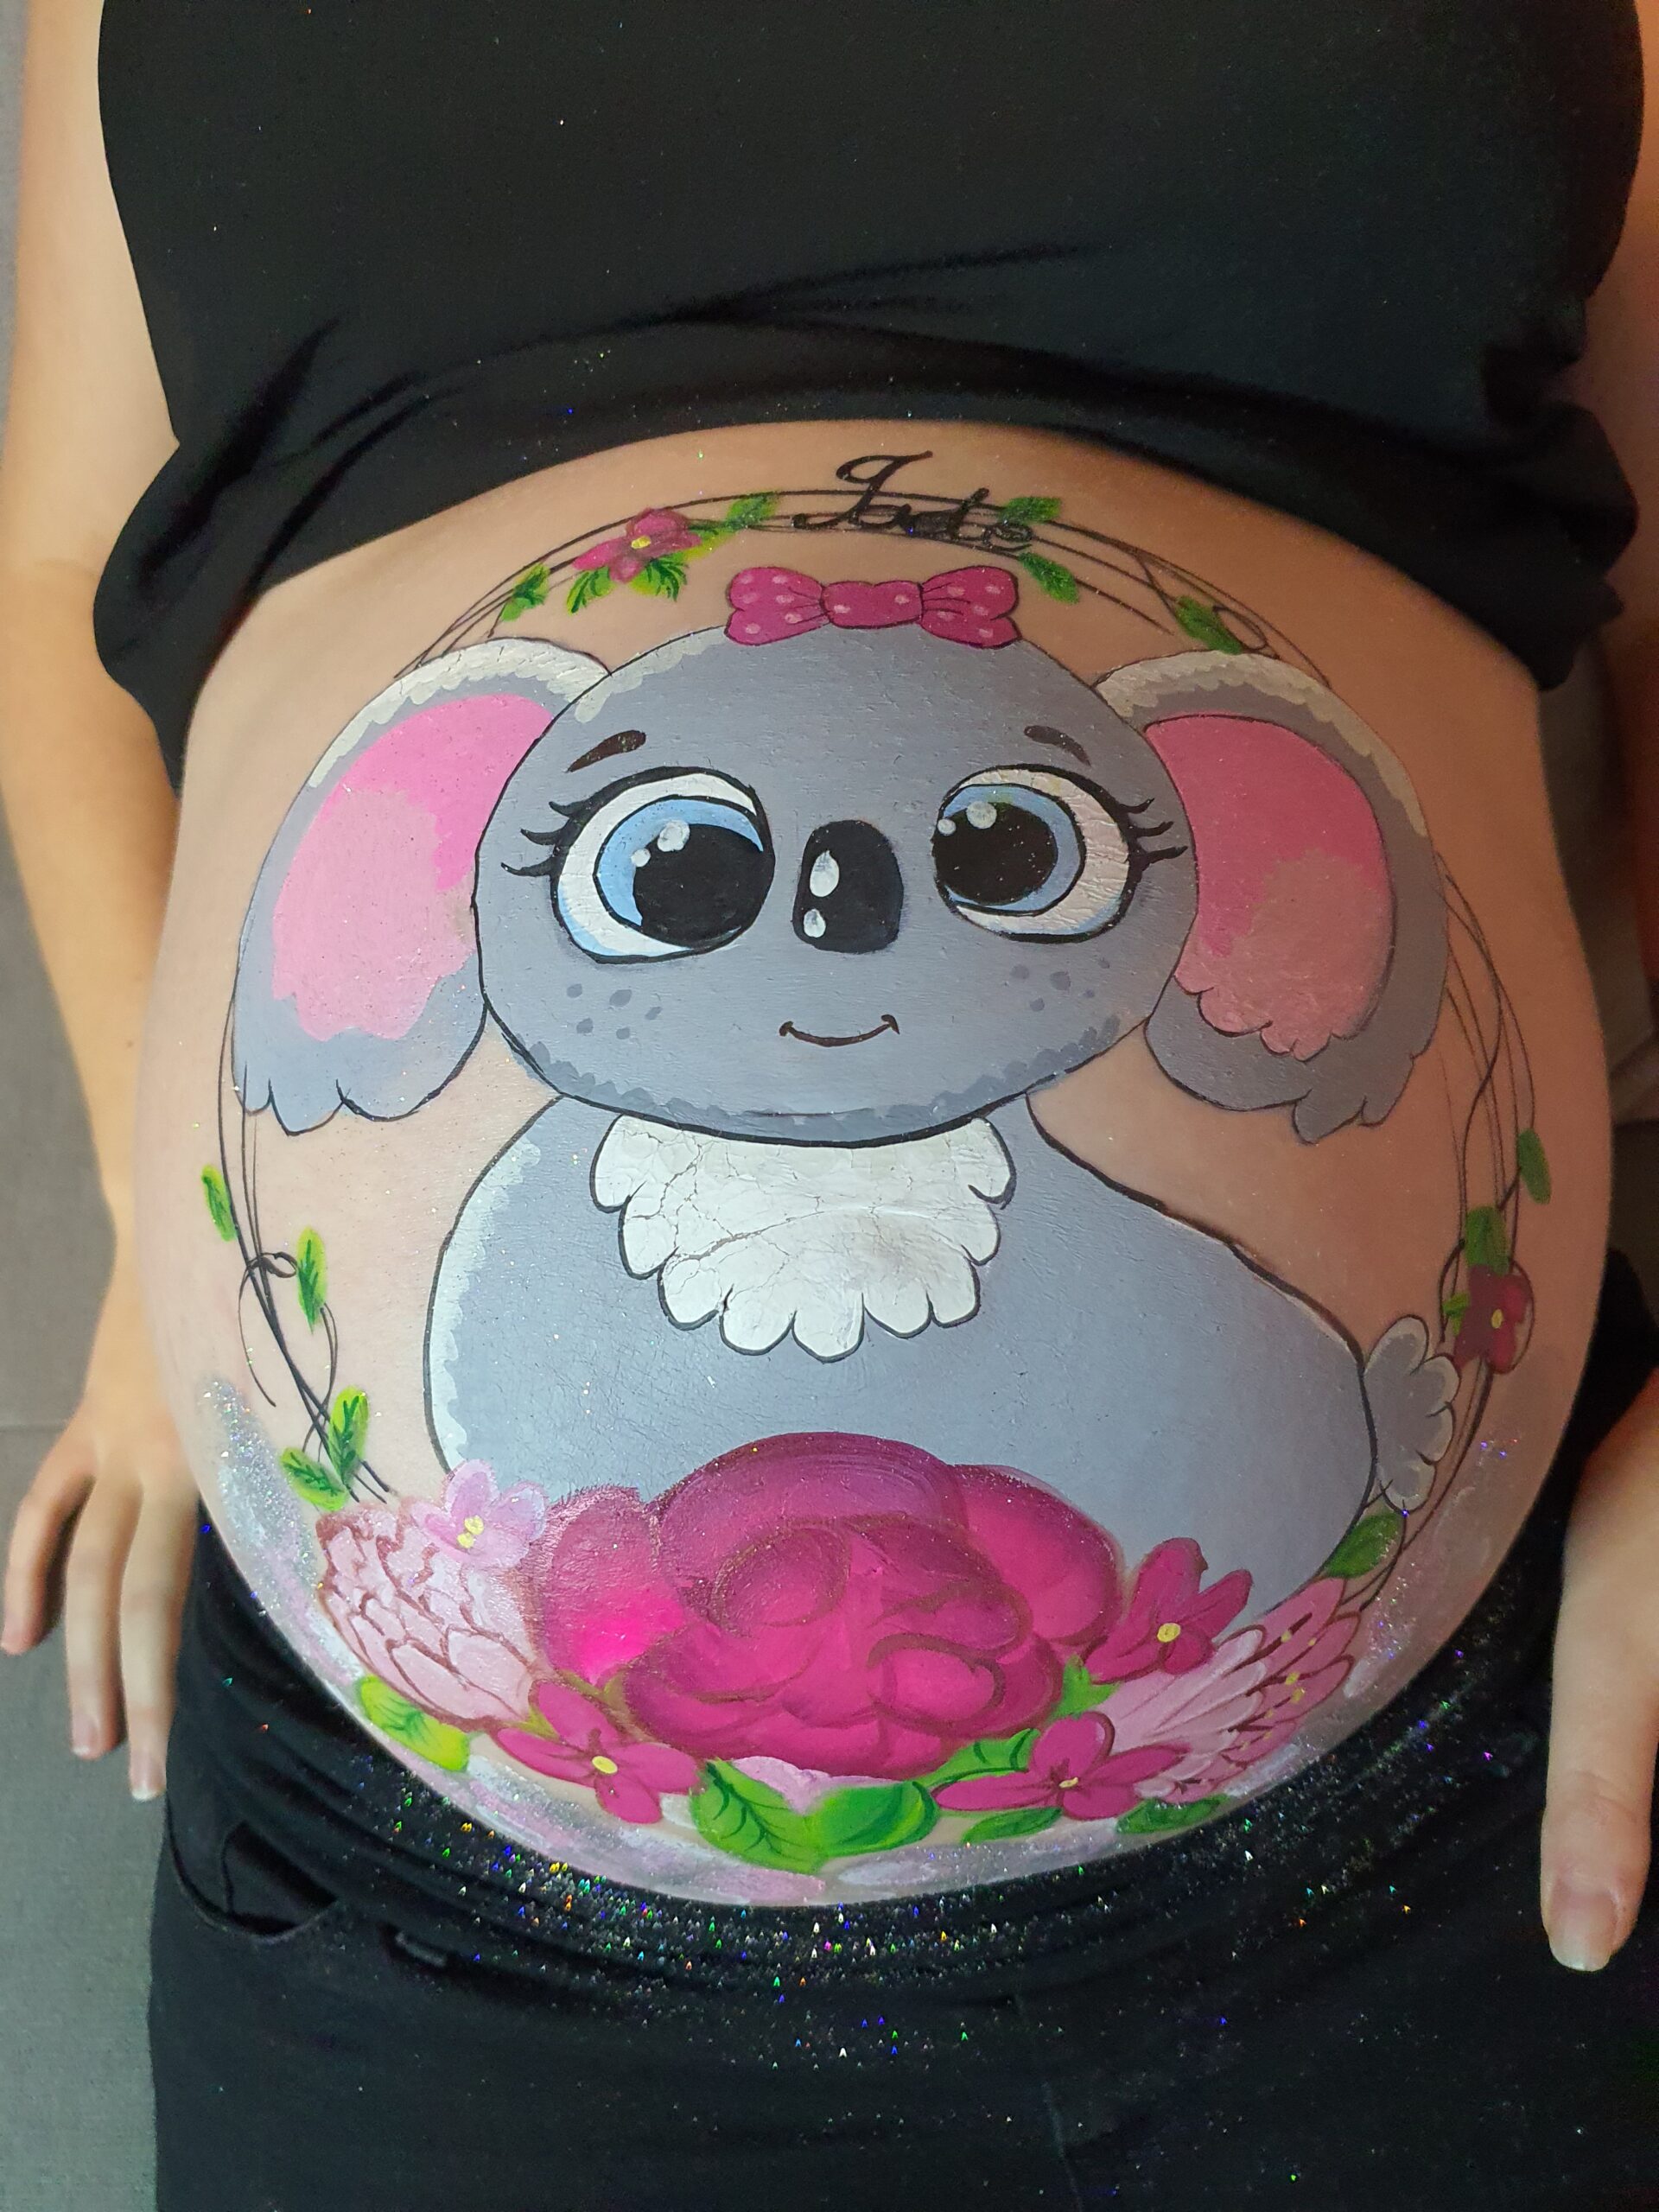 Belly painting / Maquillage prénatal sur le ventre de la maman chez Chris Esthétique